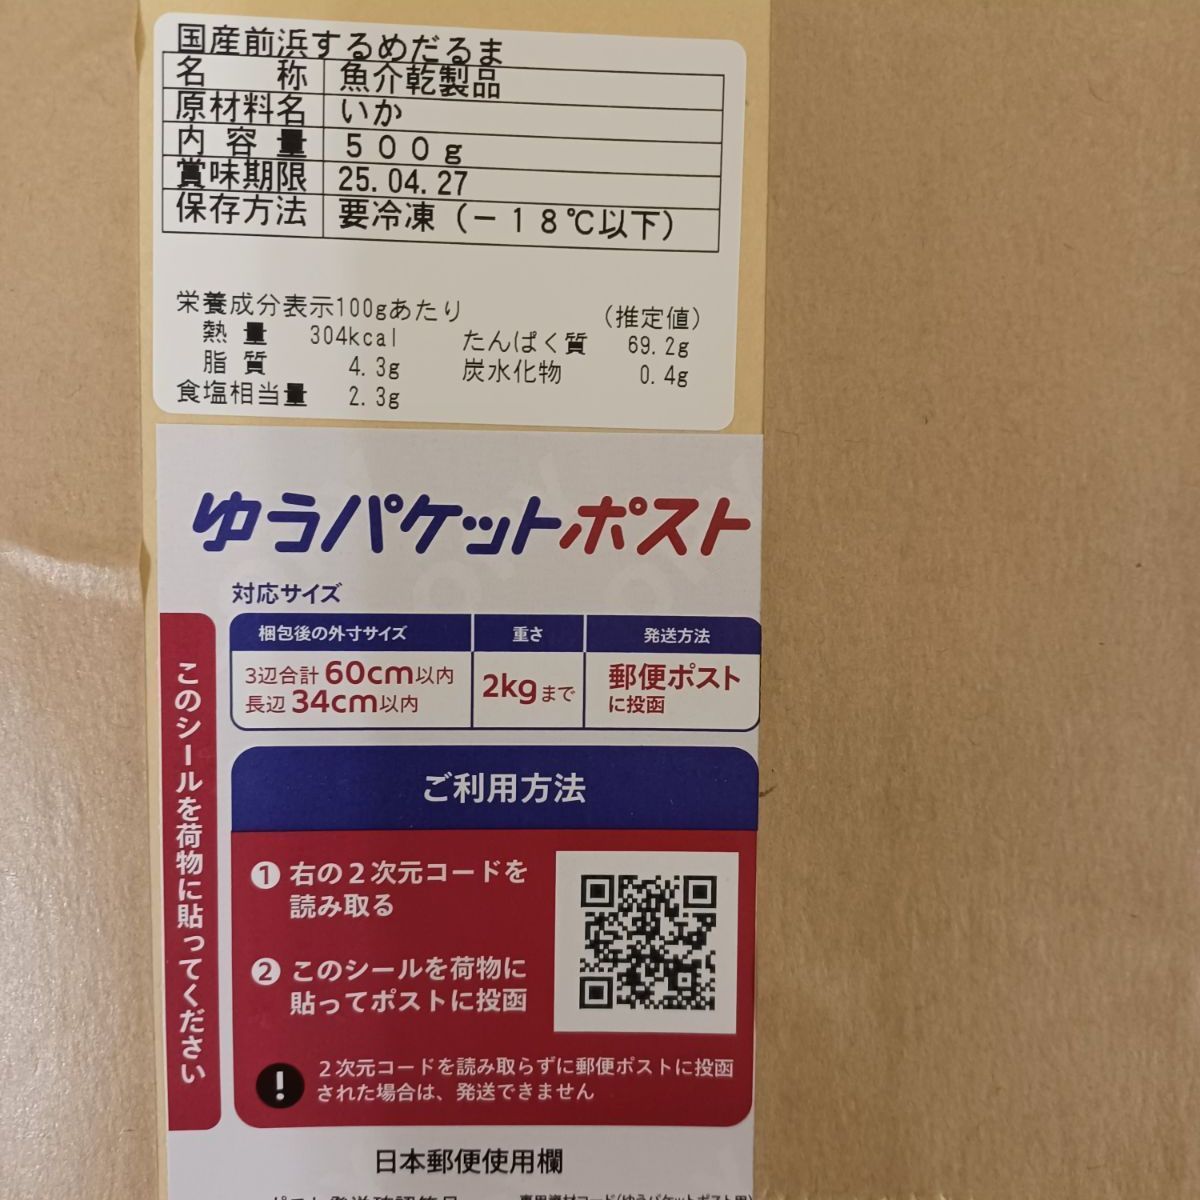 大好評 新物前浜するめだるま【500g】 - いかの街函館 カンカン商店 ...